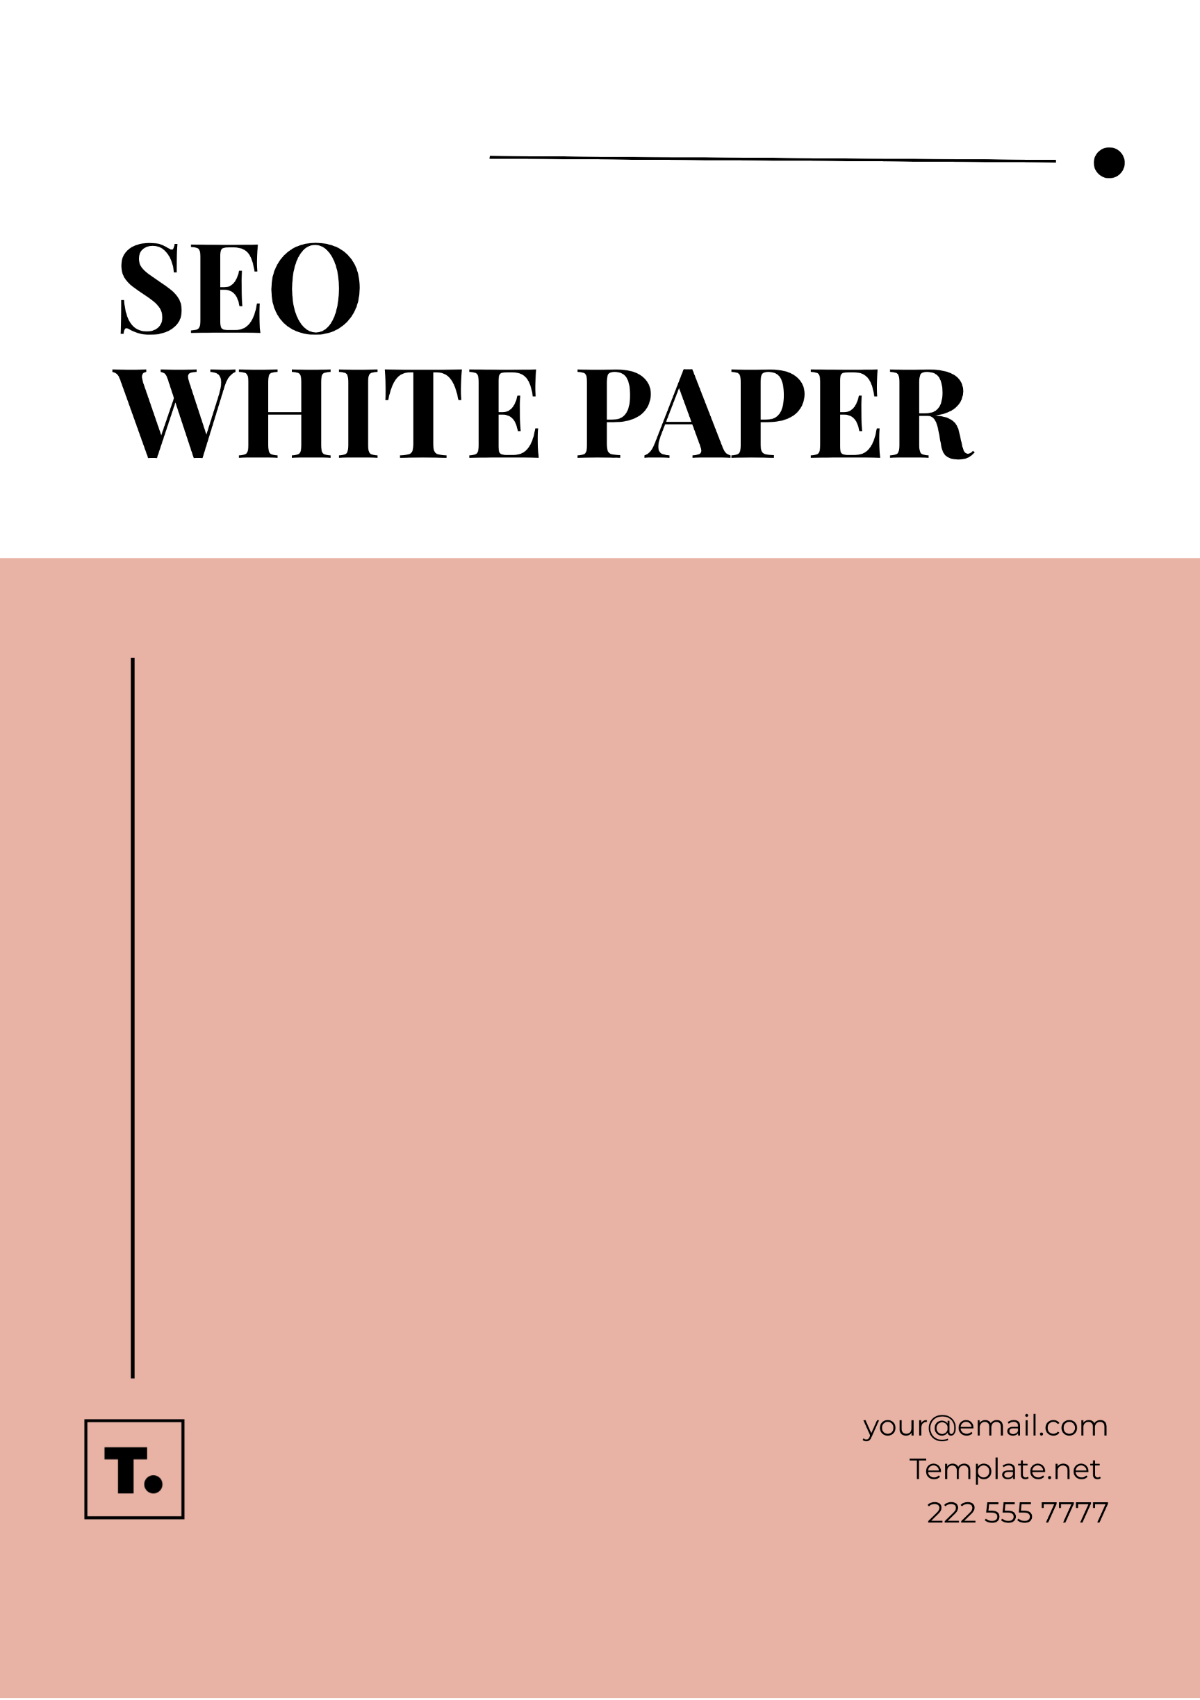 SEO White Paper Template